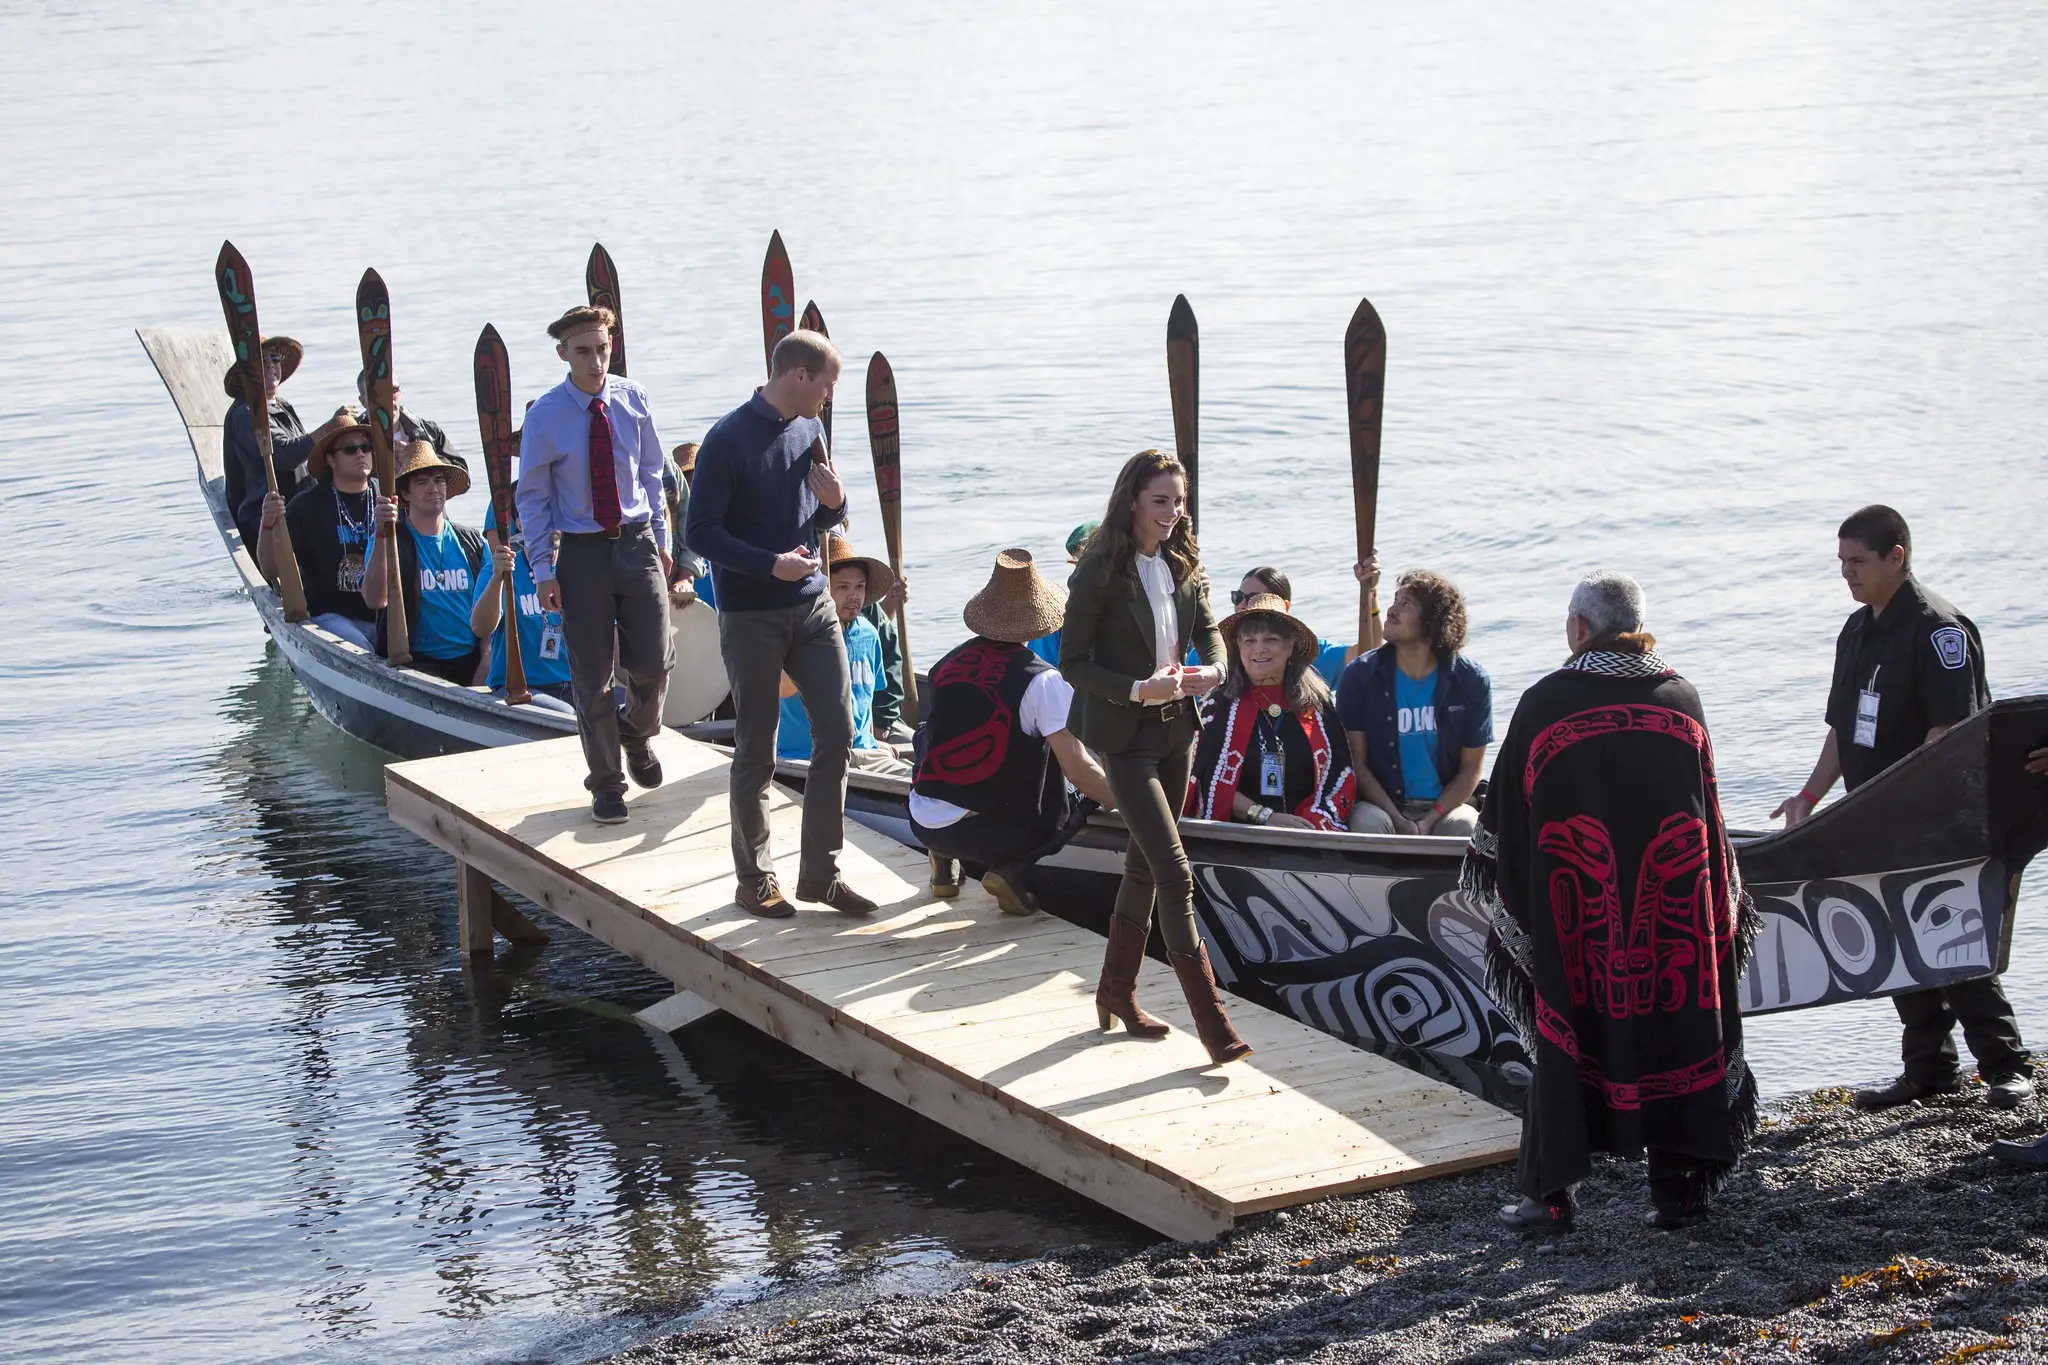 The Duke and Duchess of Cambridge arrived in Haida Gwaii